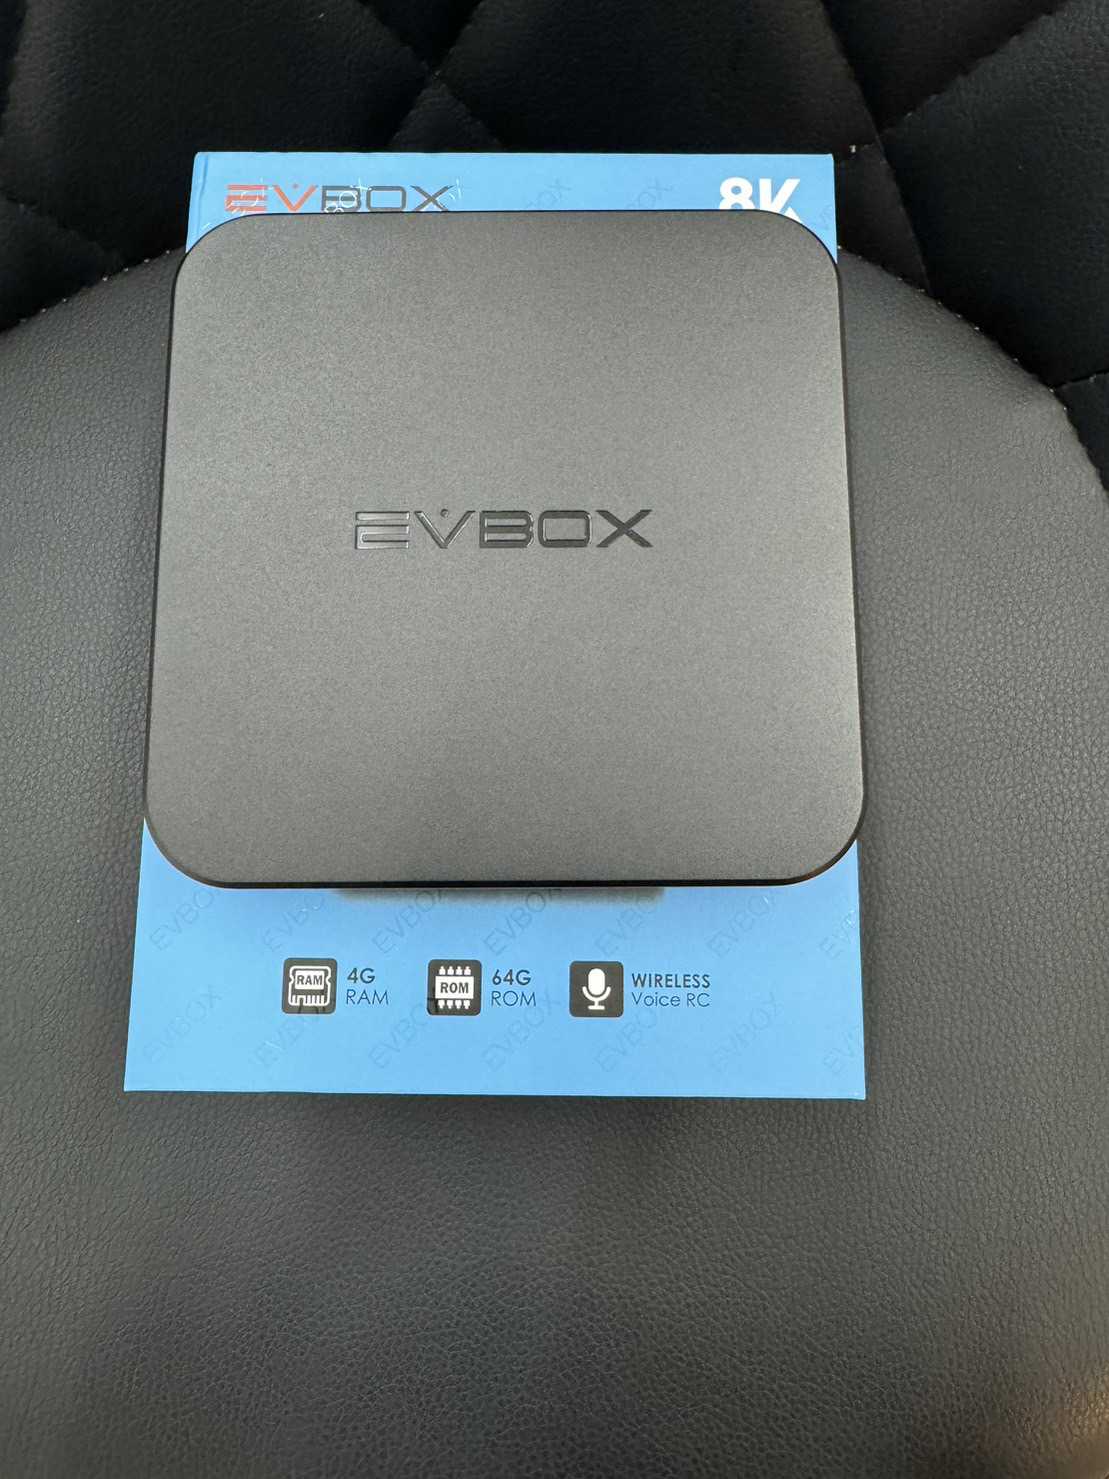 【艾爾巴二手】 EVBOX 10MAX 易播盒子 4G+64G 純淨版#保固中#二手電視盒#大里店7C217